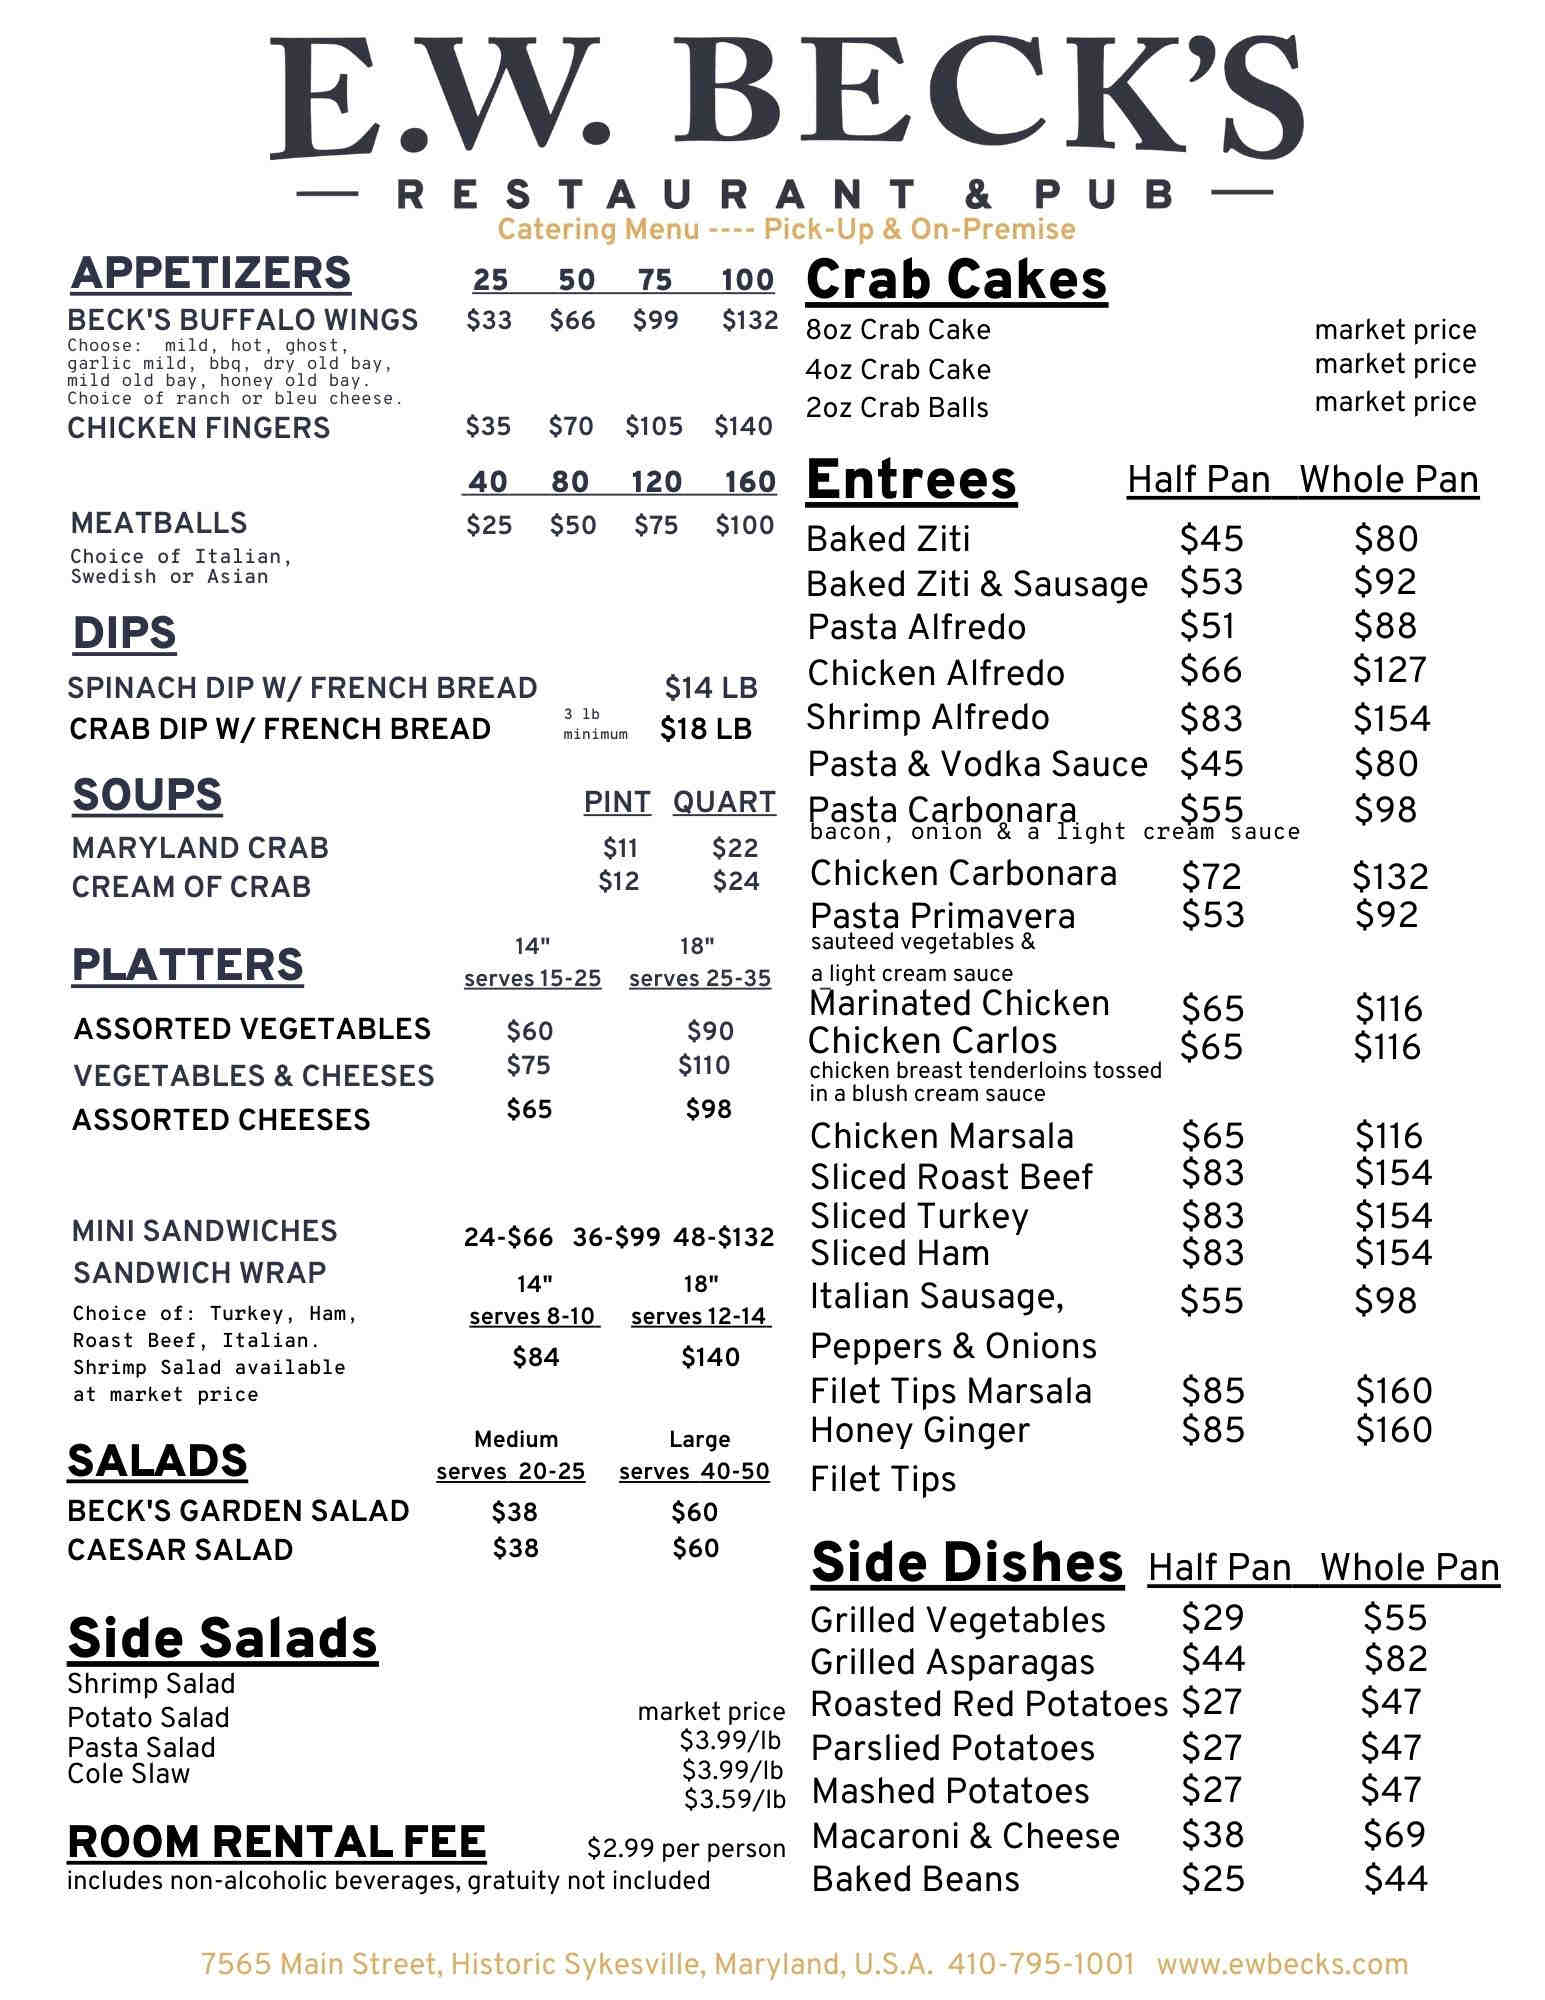 E. W. Becks catering menu